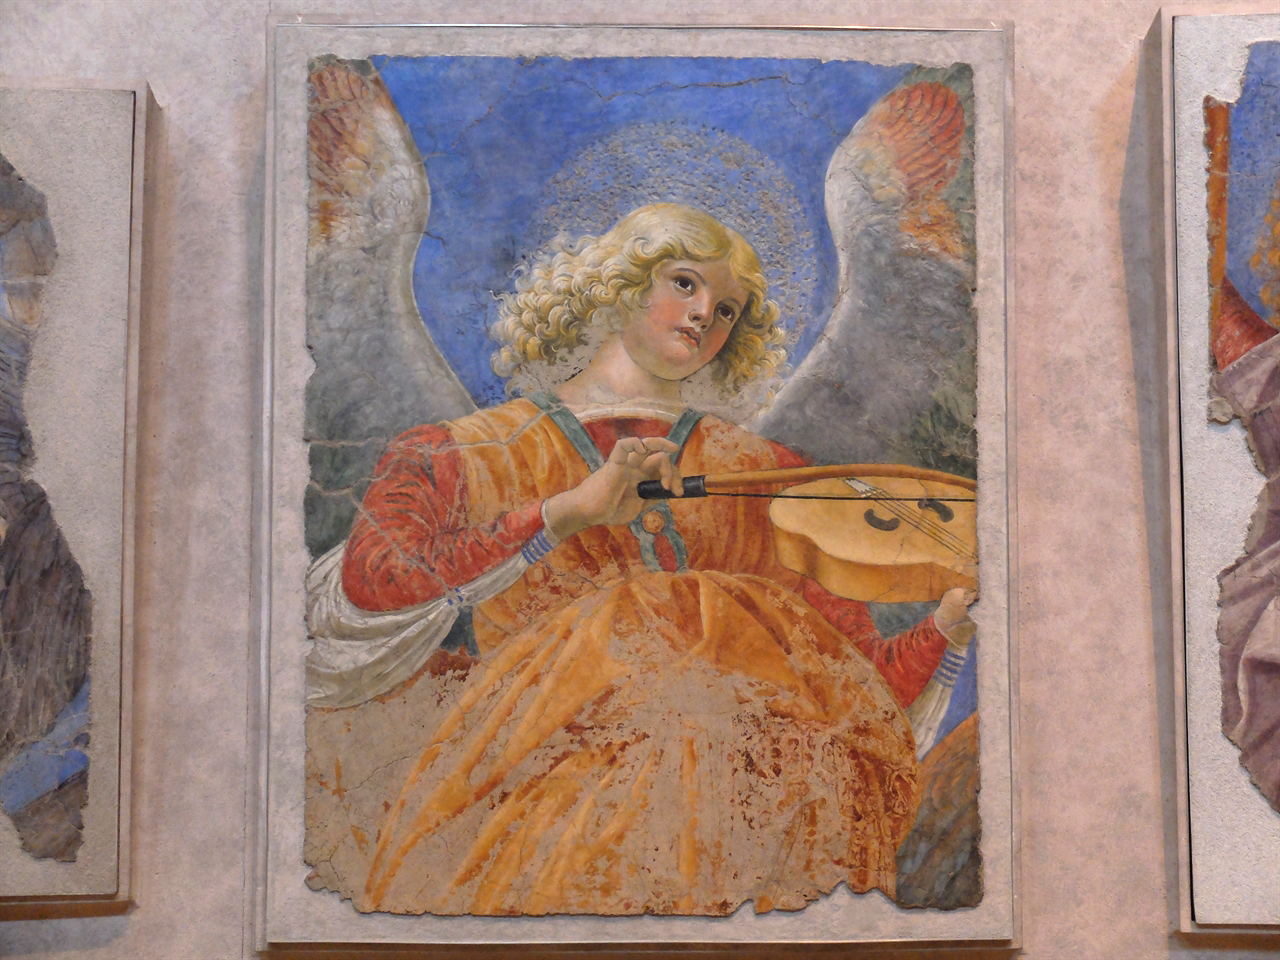 멜로초 다 포를리, <음악의 천사들>(부분), 바티칸 박물관 회화관. 성당 천장화의 일부였던 이 작품들은 프레스코임에도 불구하고 파스텔로 그린 것처럼 부드러운 색감을 보여줍니다. 